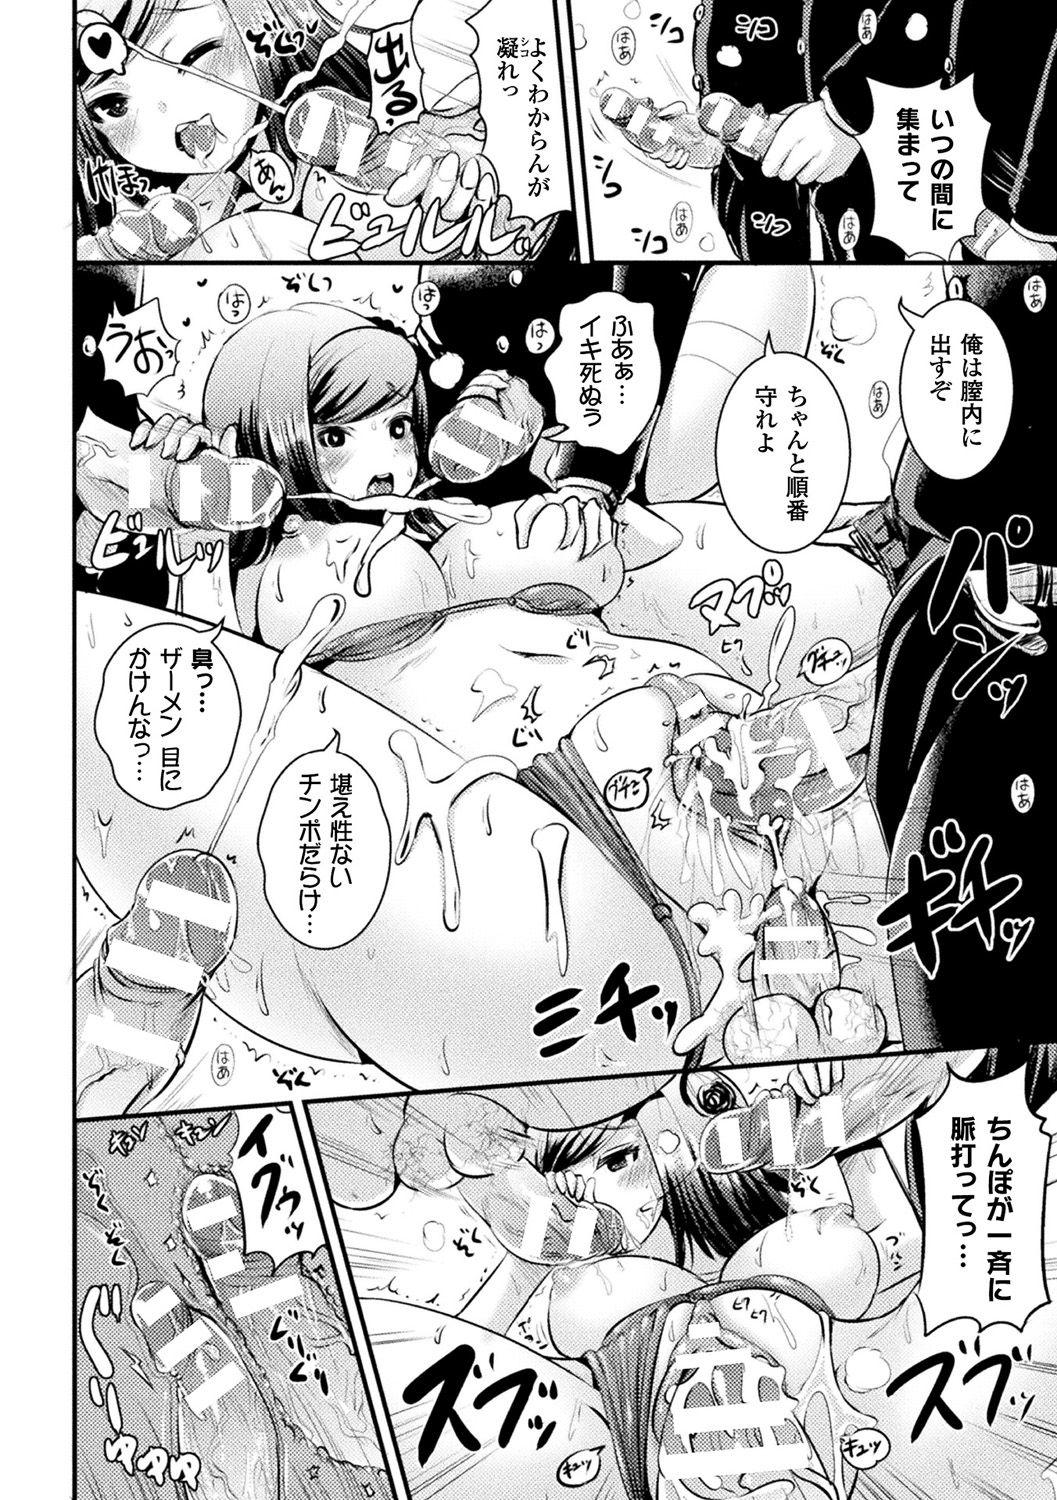 [Anthology] Bessatsu Comic Unreal TS Bitch ~Yaritagari Nyotaika Bishoujo-tachi~ Vol. 2 [Digital] 21